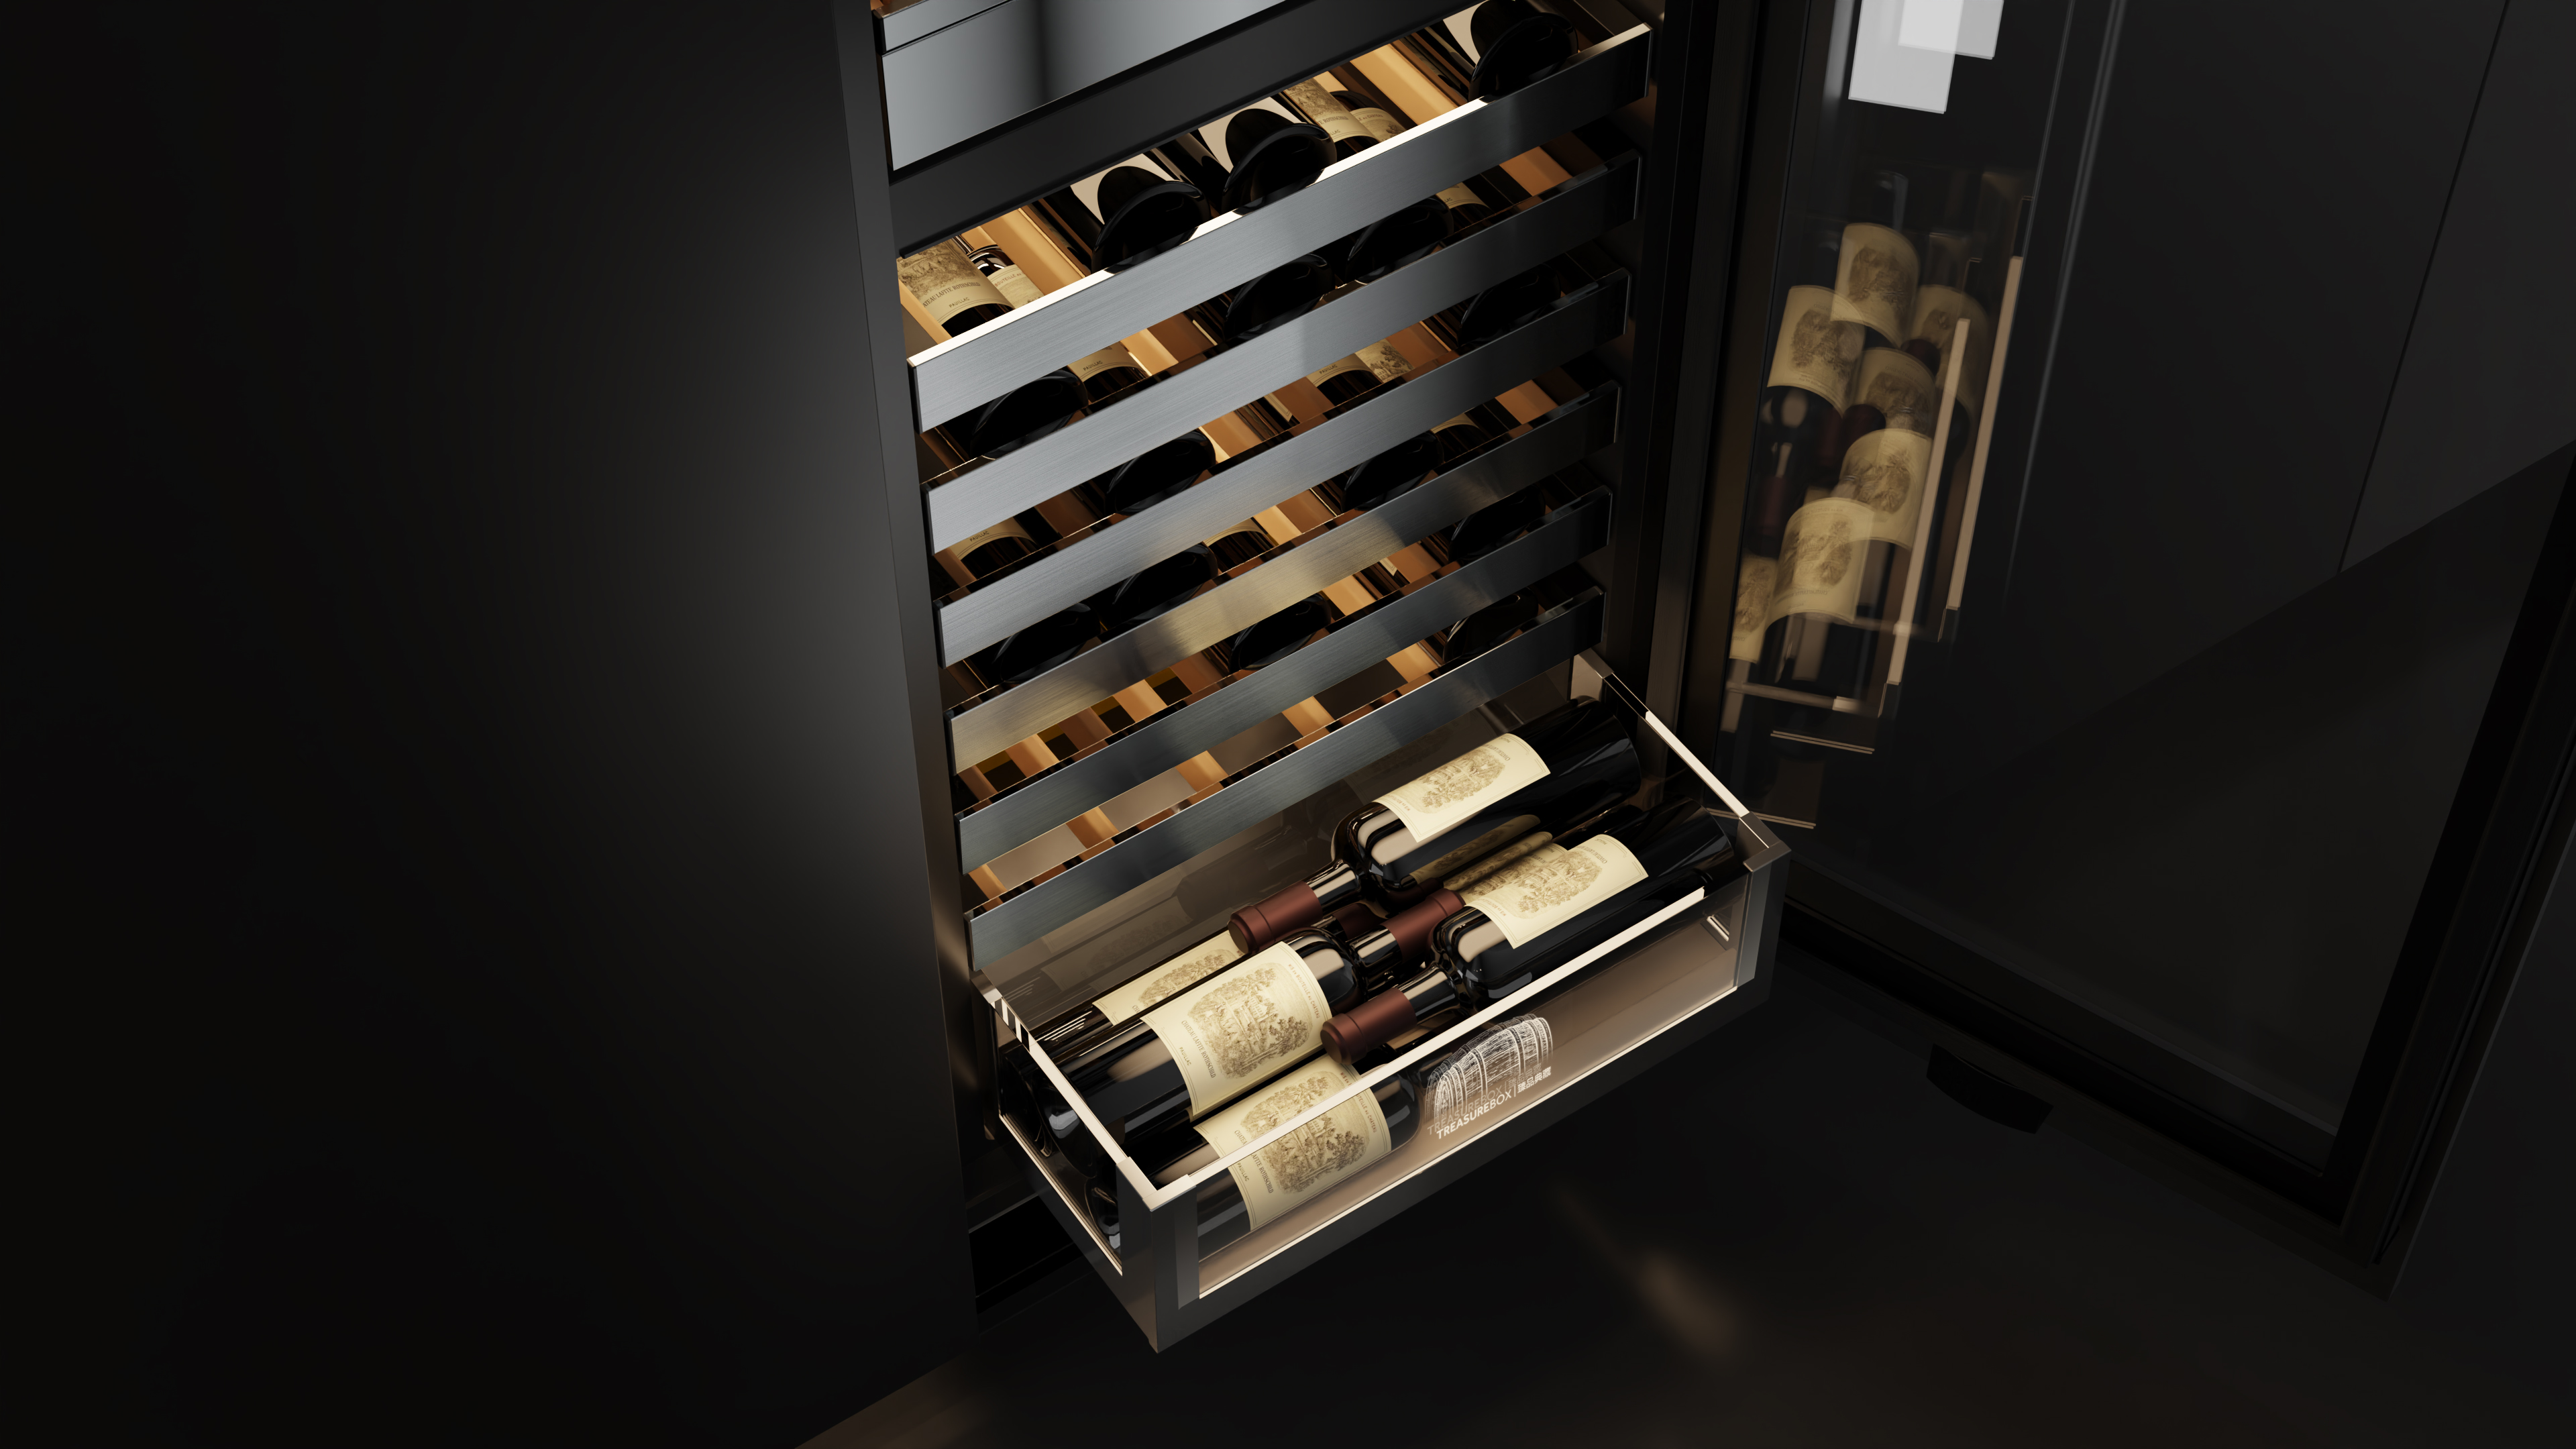 Casarte Built-in Wine Cooler